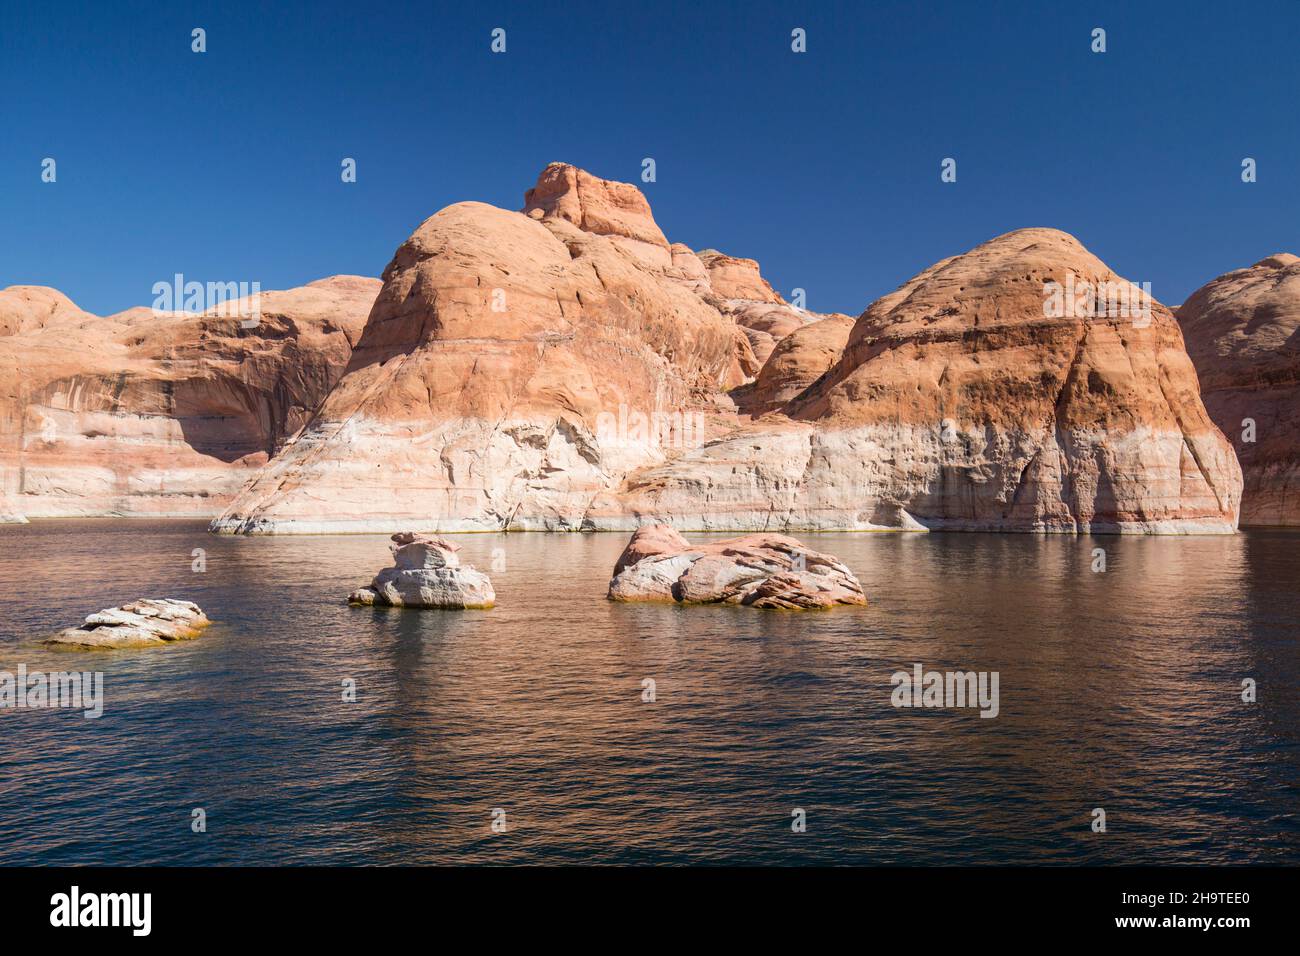 Área Nacional de Recreación de Glen Canyon, Utah, Estados Unidos. Los acantilados de arenisca se refectaron en las tranquilas aguas del cañón, un estrecho brazo del lago Powell. Foto de stock